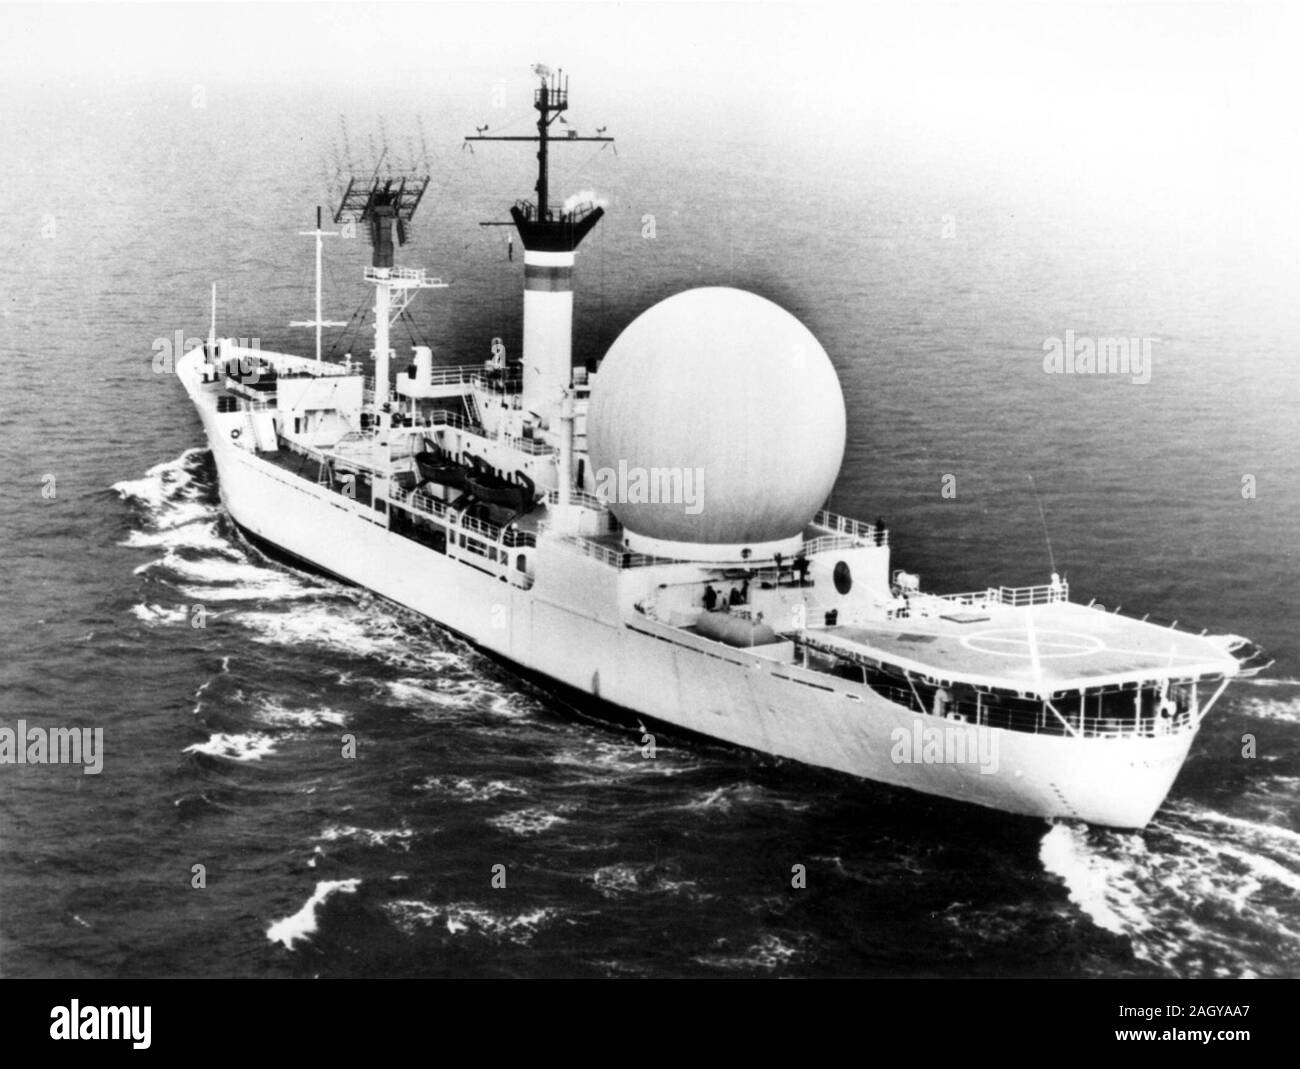 En 1962, la Marina de los Estados Unidos construyó el primer buque de comunicaciones por satélite, la U.S.N.S. Kingsport. La imagen muestra un 53-pie de domo de plástico blanco que protegen un 30-pie estabilizado de antena parabólica. Foto de stock